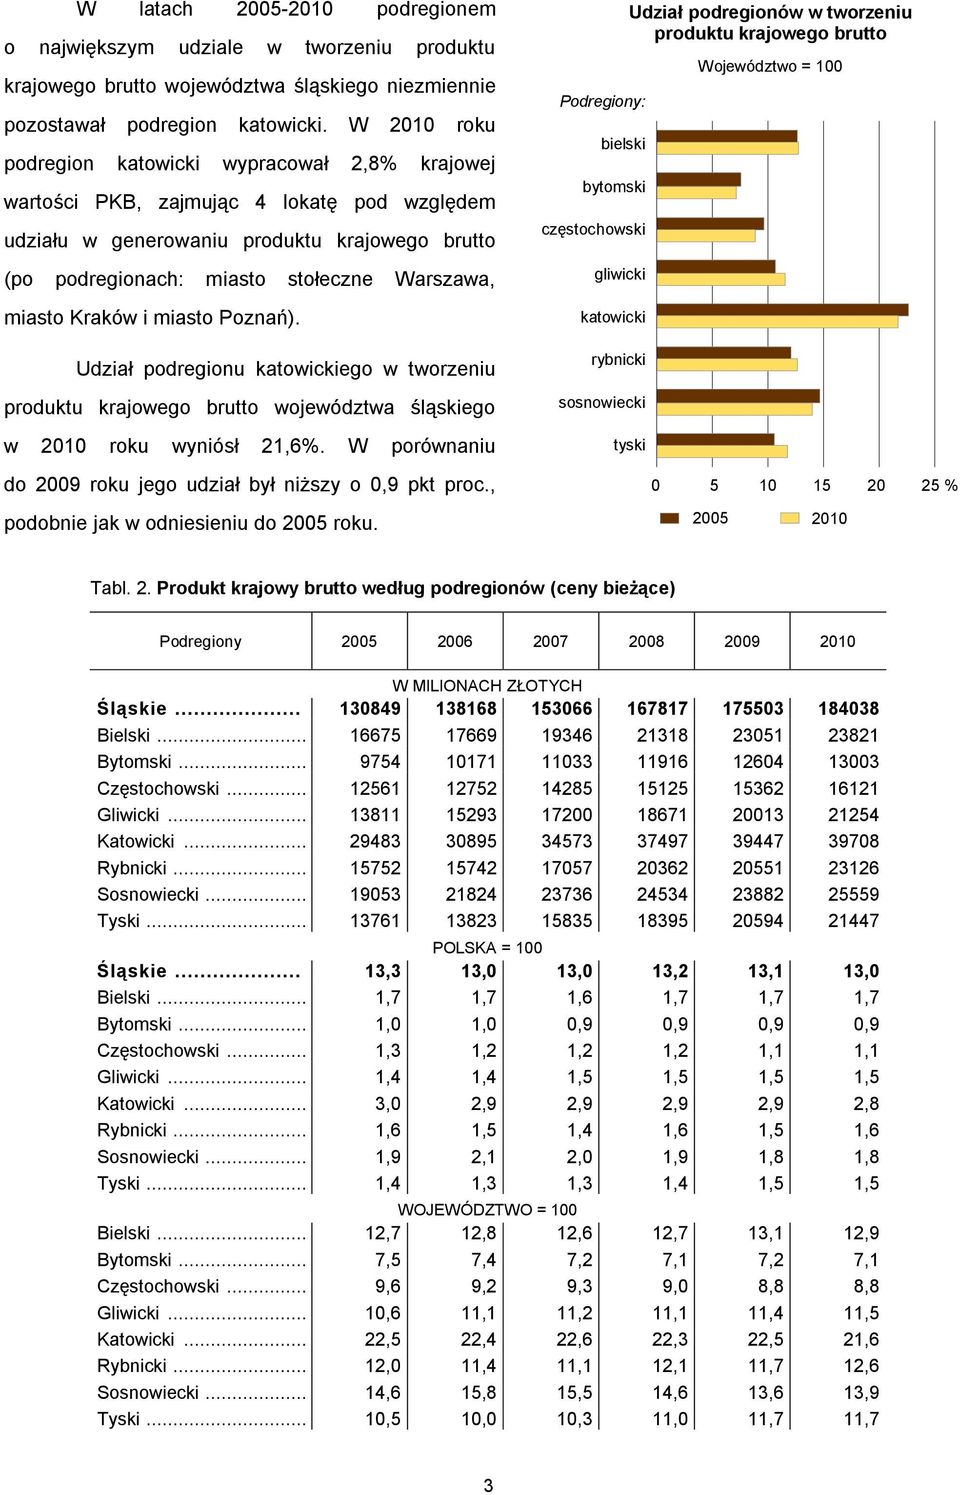 miasto Kraków i miasto Poznań). Udział podregionu katowickiego w tworzeniu produktu krajowego brutto województwa śląskiego w 2010 roku wyniósł 21,6%.